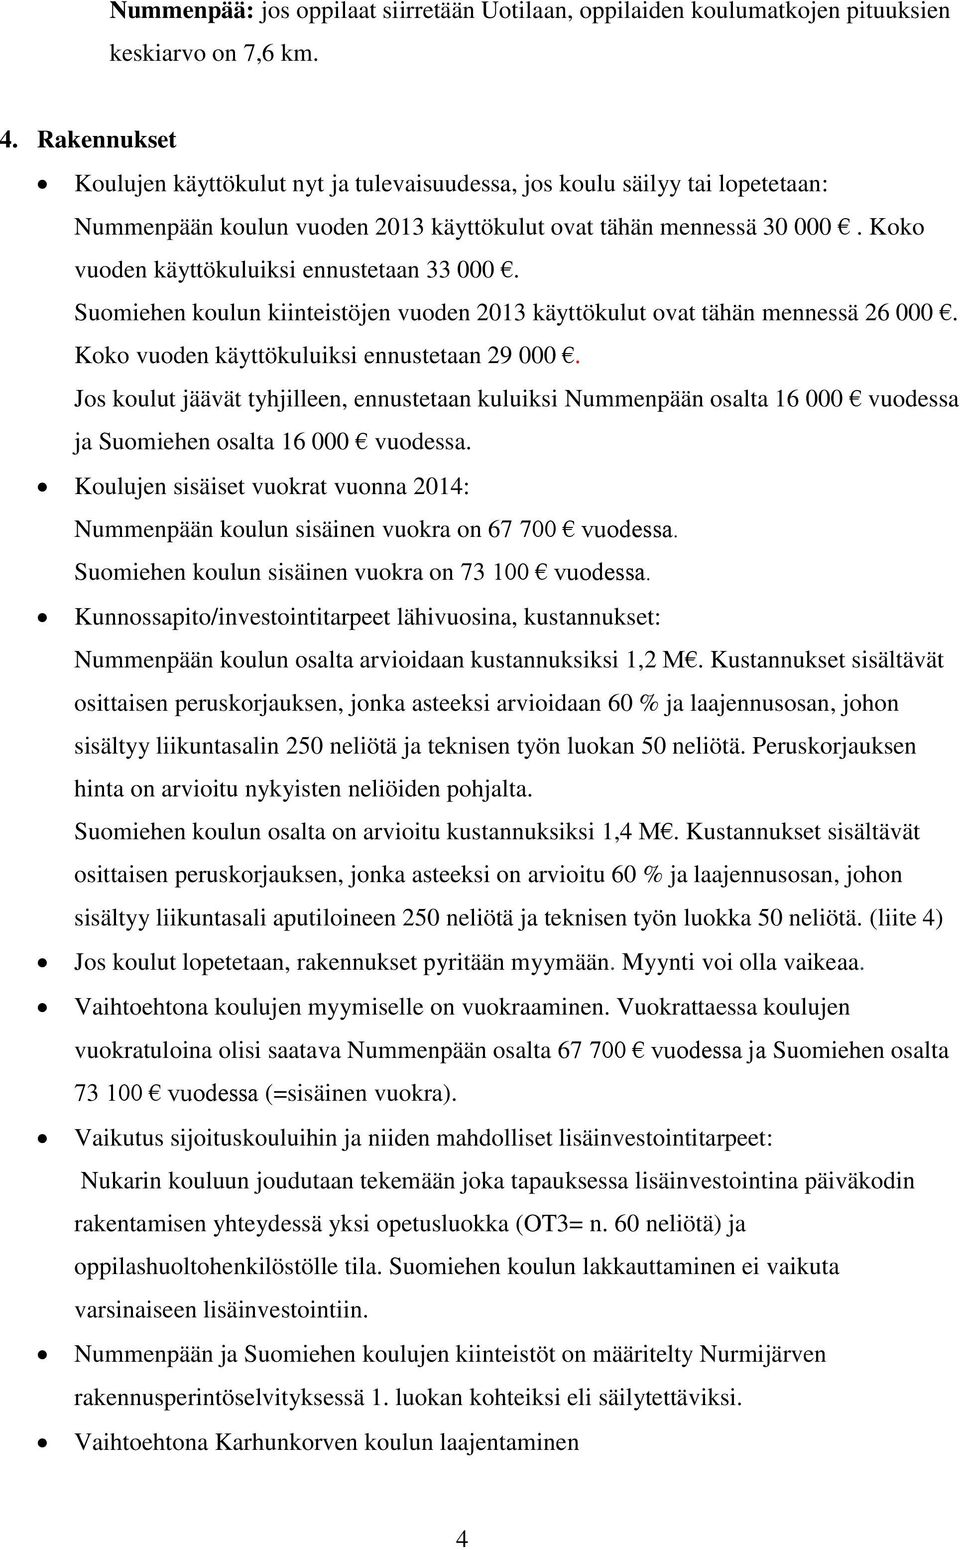 Koko vuoden käyttökuluiksi ennustetaan 33 000. Suomiehen koulun kiinteistöjen vuoden 2013 käyttökulut ovat tähän mennessä 26 000. Koko vuoden käyttökuluiksi ennustetaan 29 000.